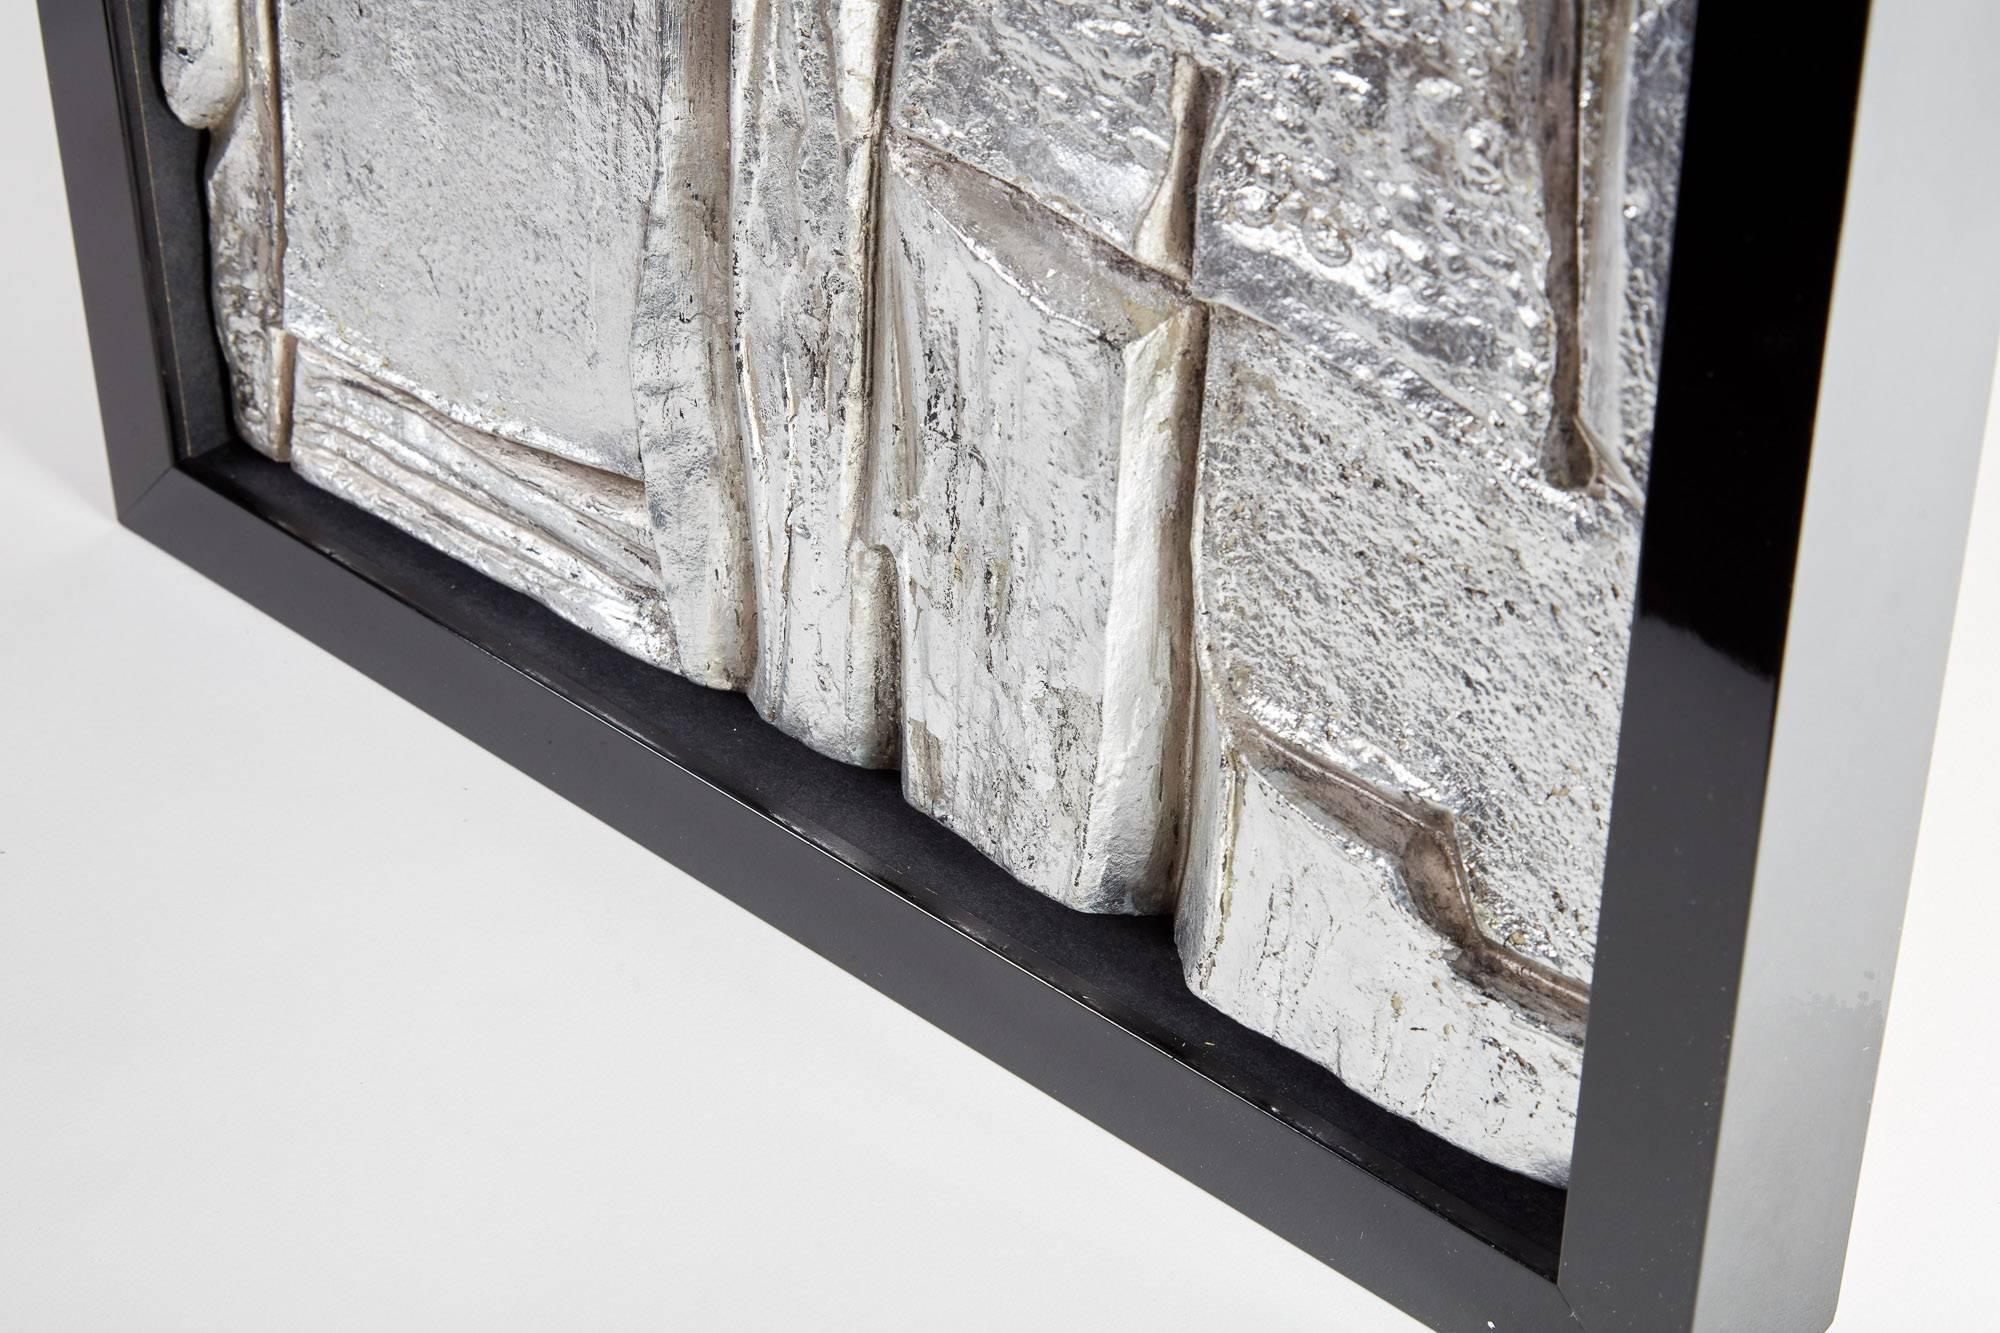 Escultura abstracta francesa de escayola/hoja de plata enmarcada de mediados del siglo XX
Esta escultura tridimensional, de gran textura, está hecha de escayola y tiene un acabado de pan de plata. Firmado por el artista y enmarcado en un marco